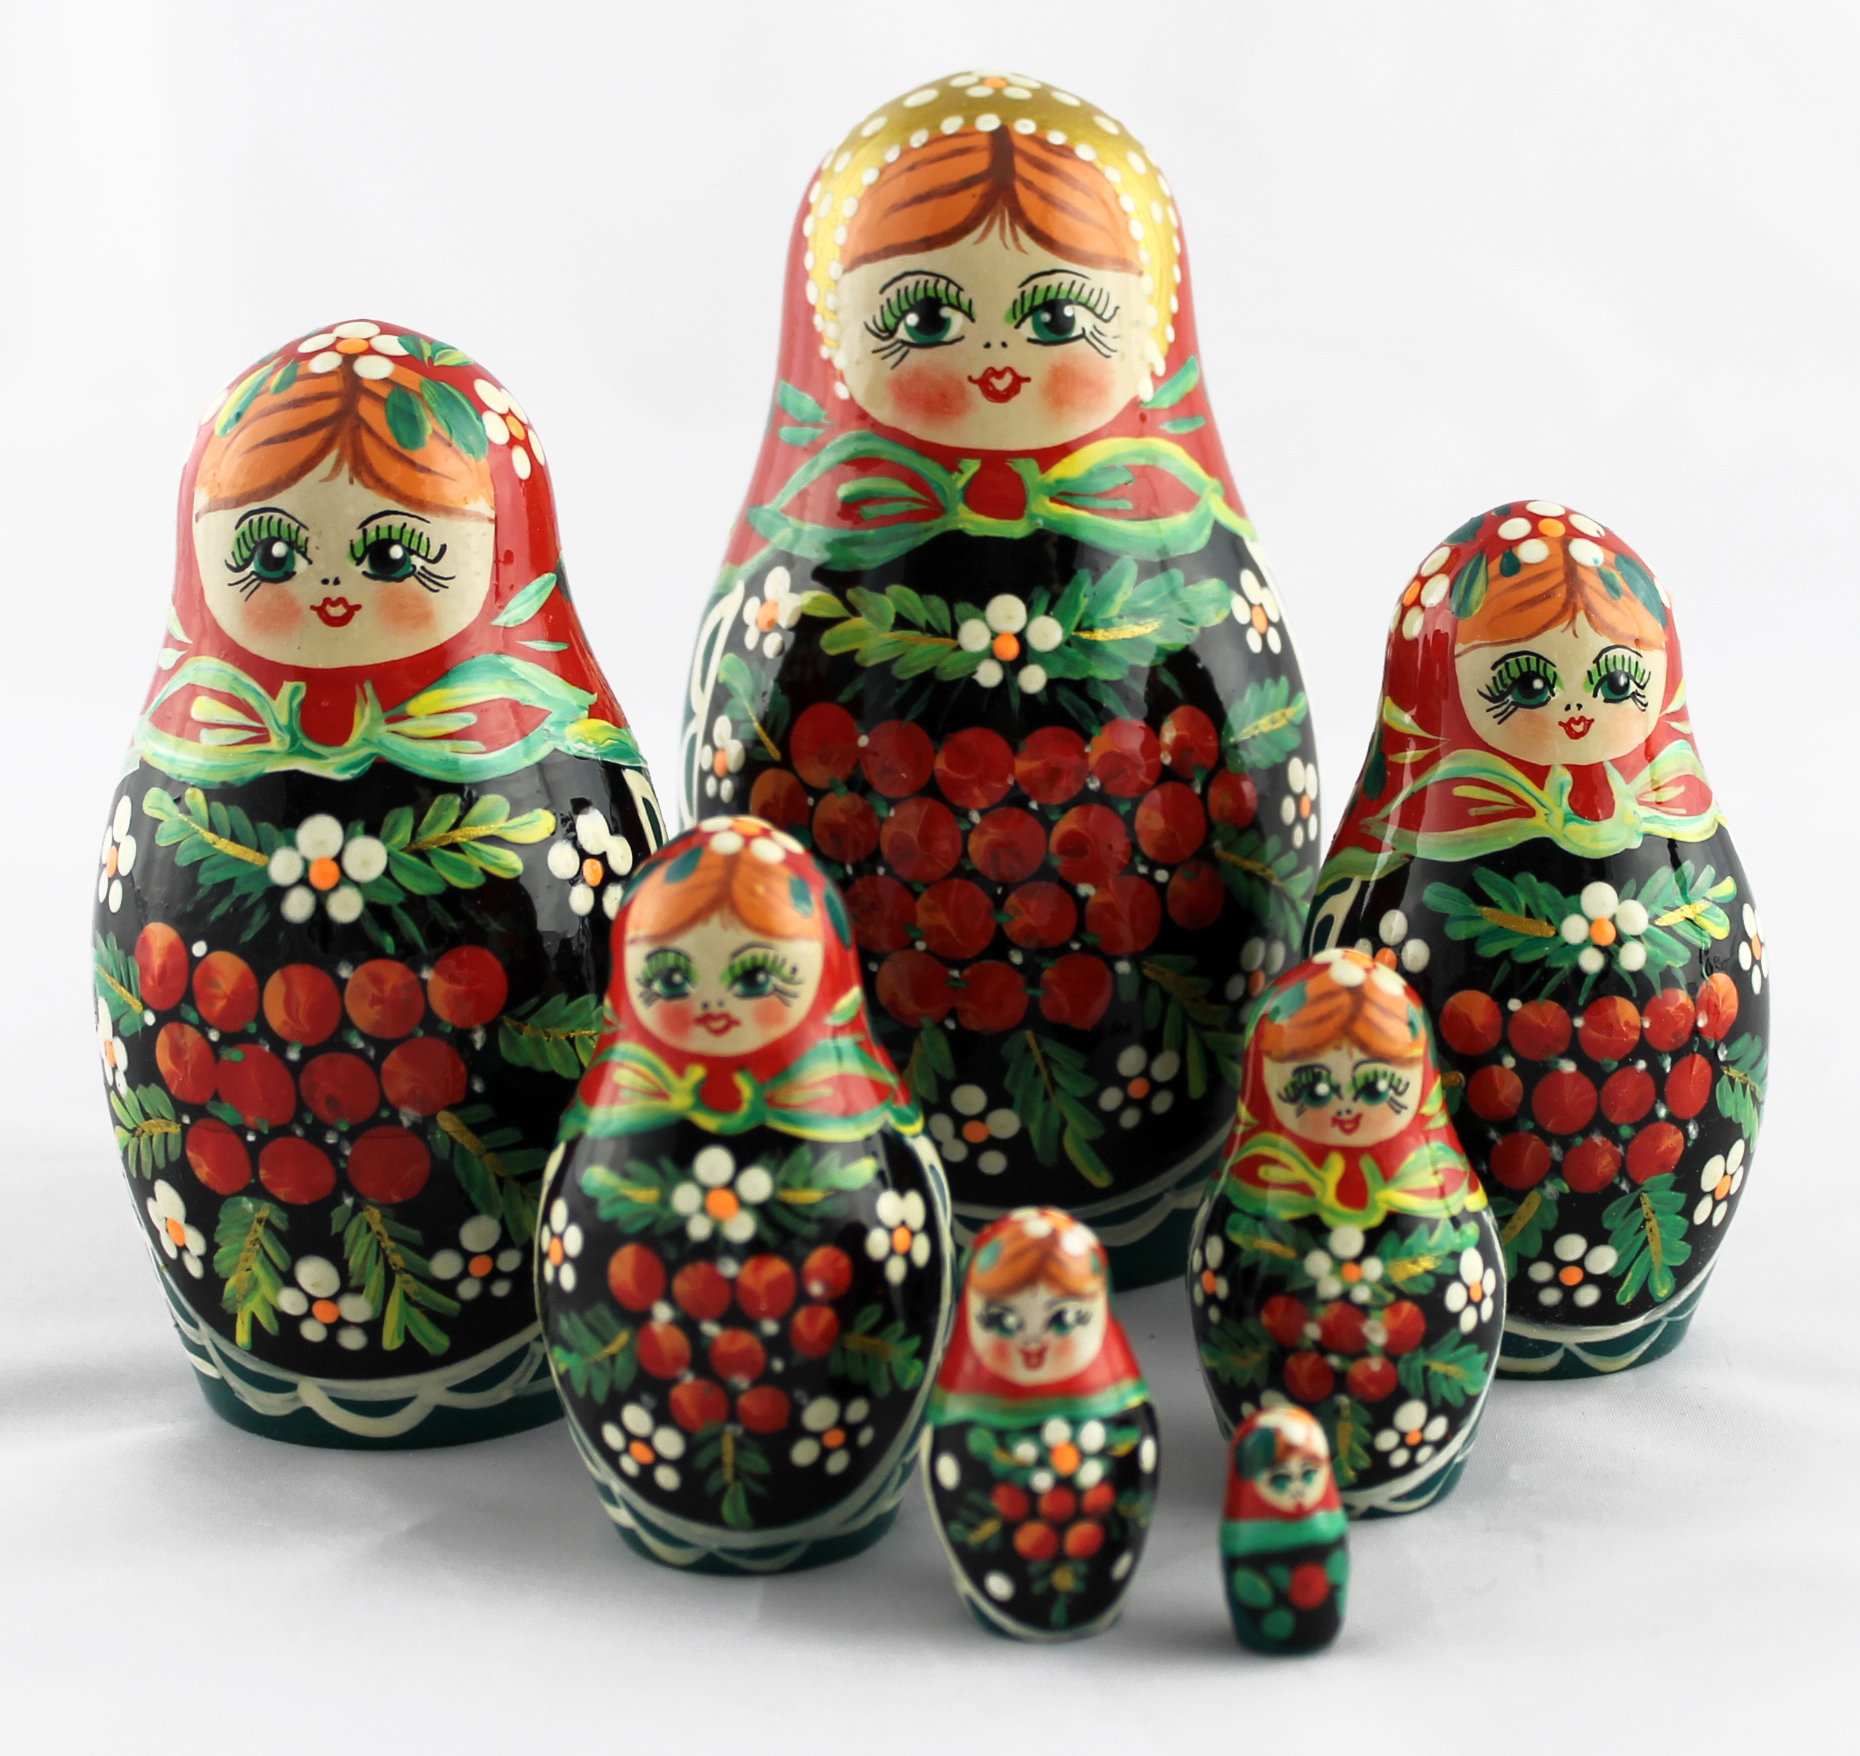 Russian dolls for children uk